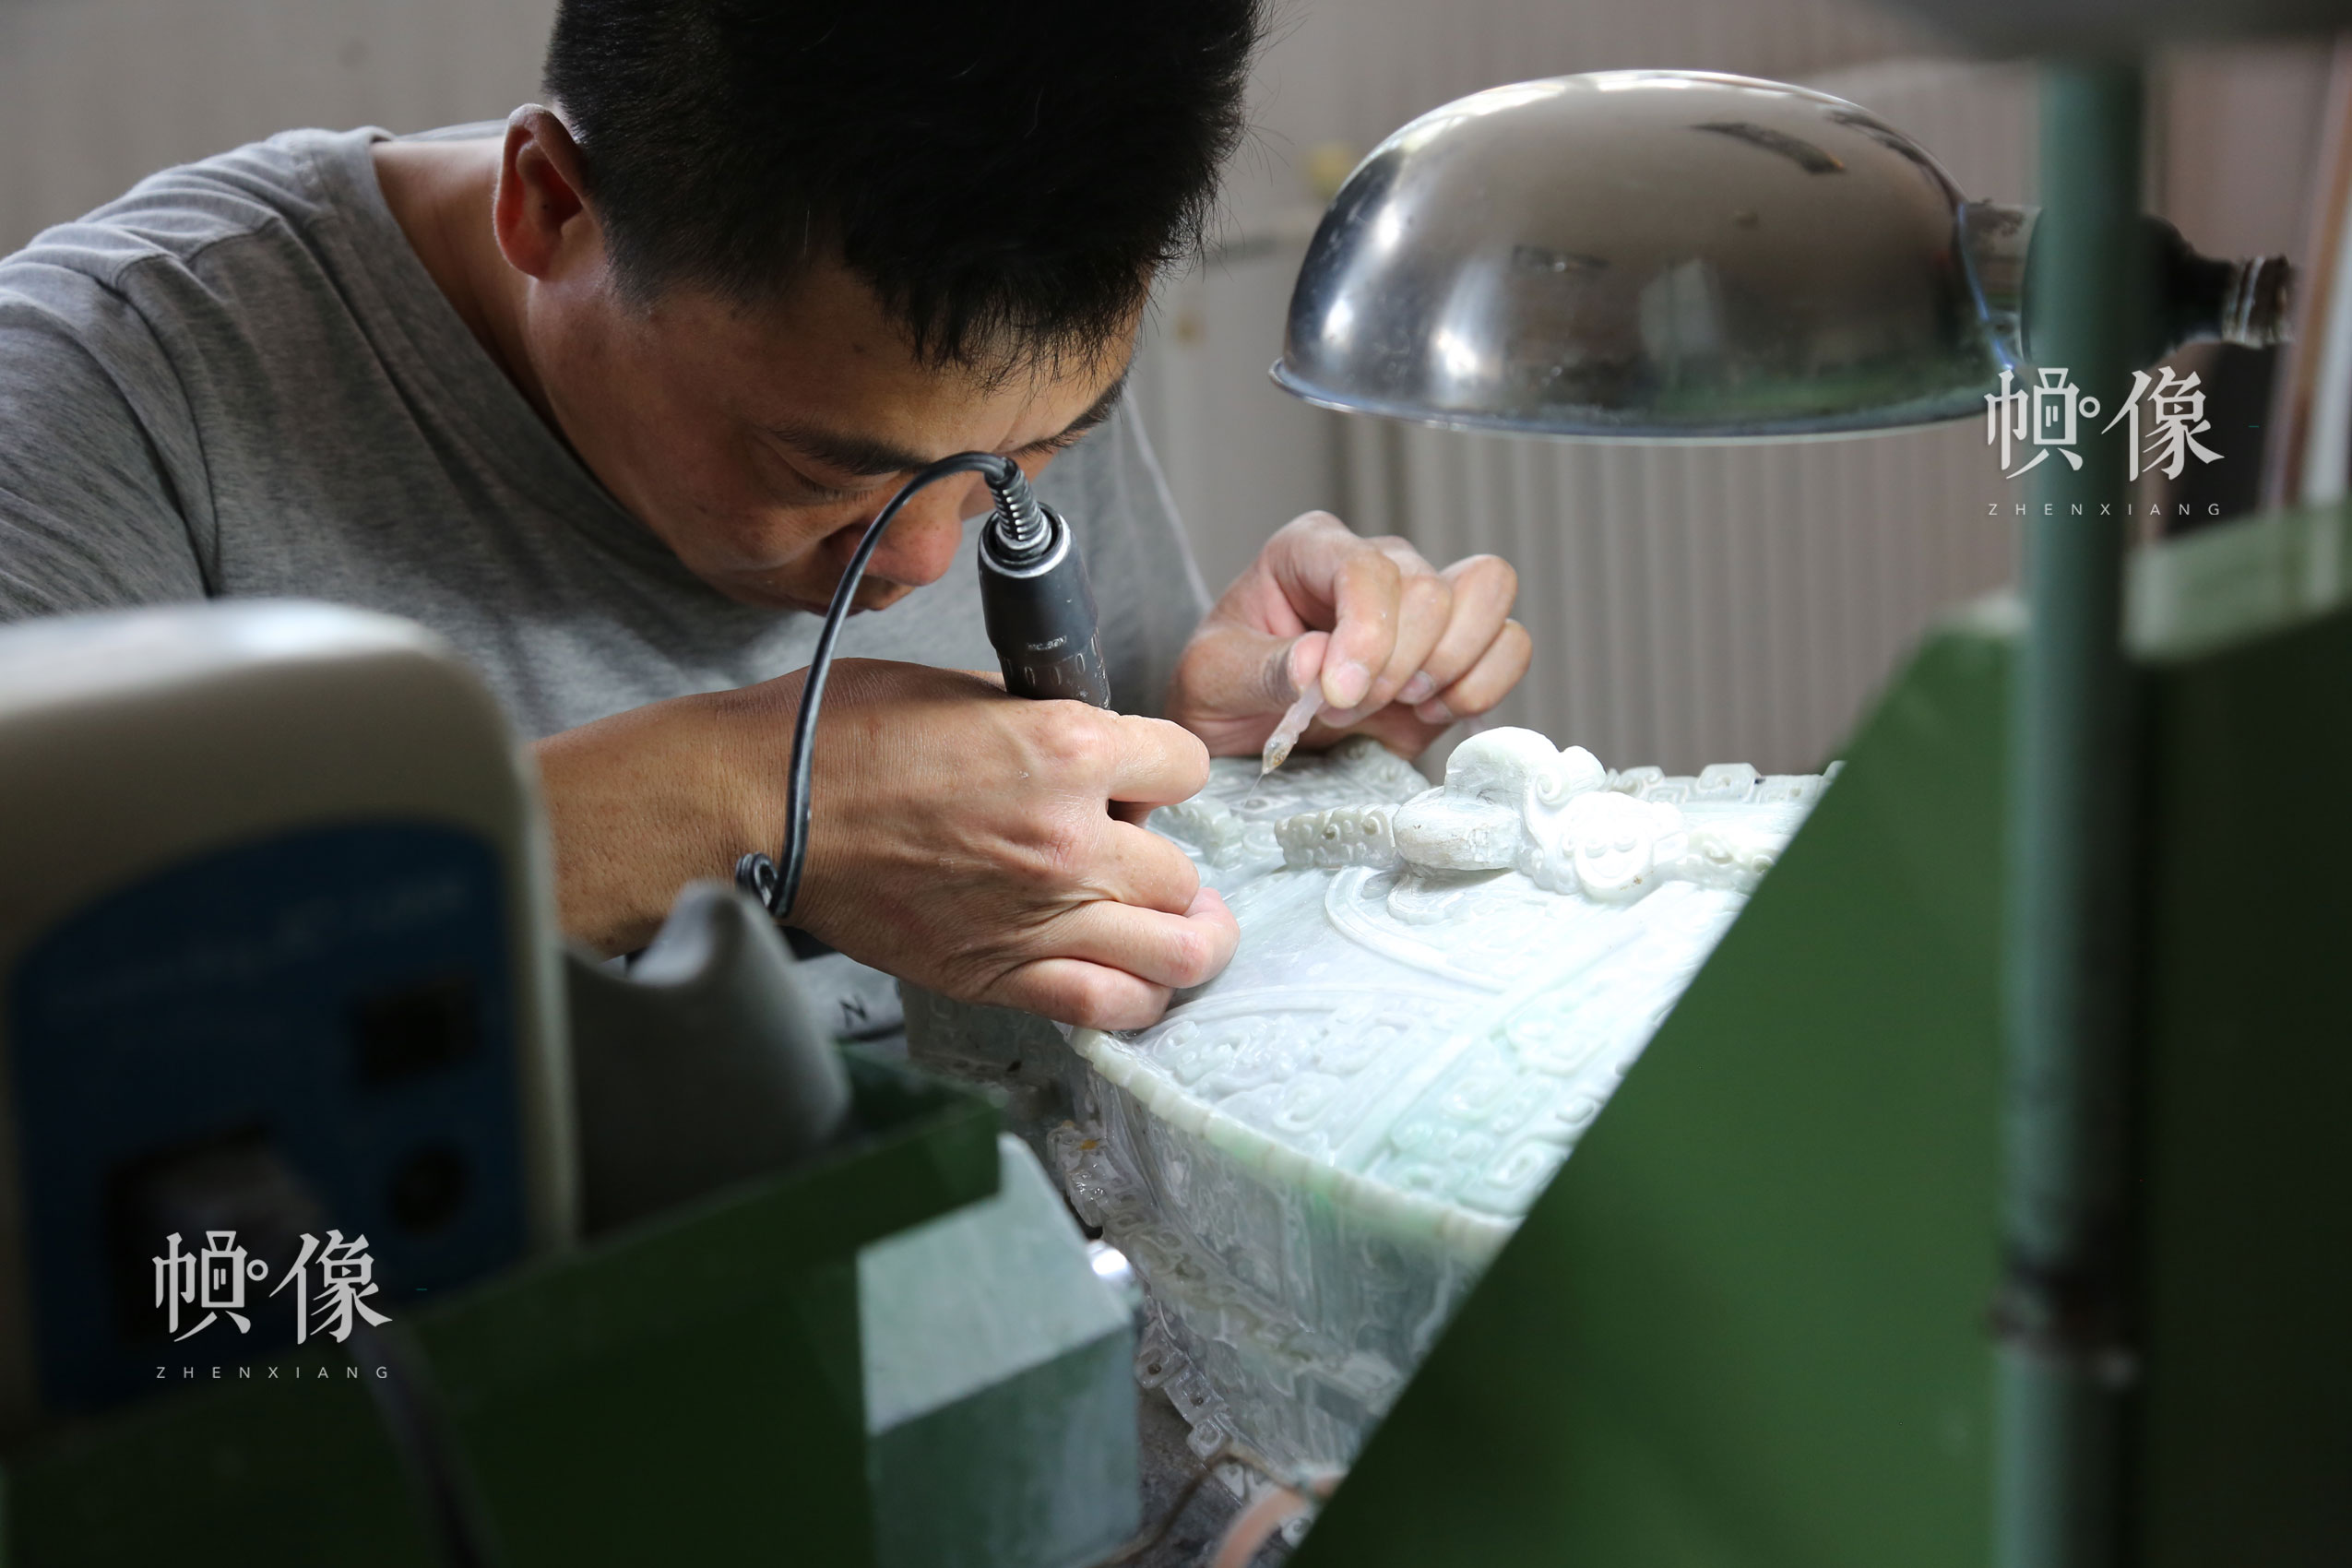 2017年9月5日，北京工美聚艺文化创意园区，玉雕工作者在雕琢玉器。中国网记者 赵超 摄